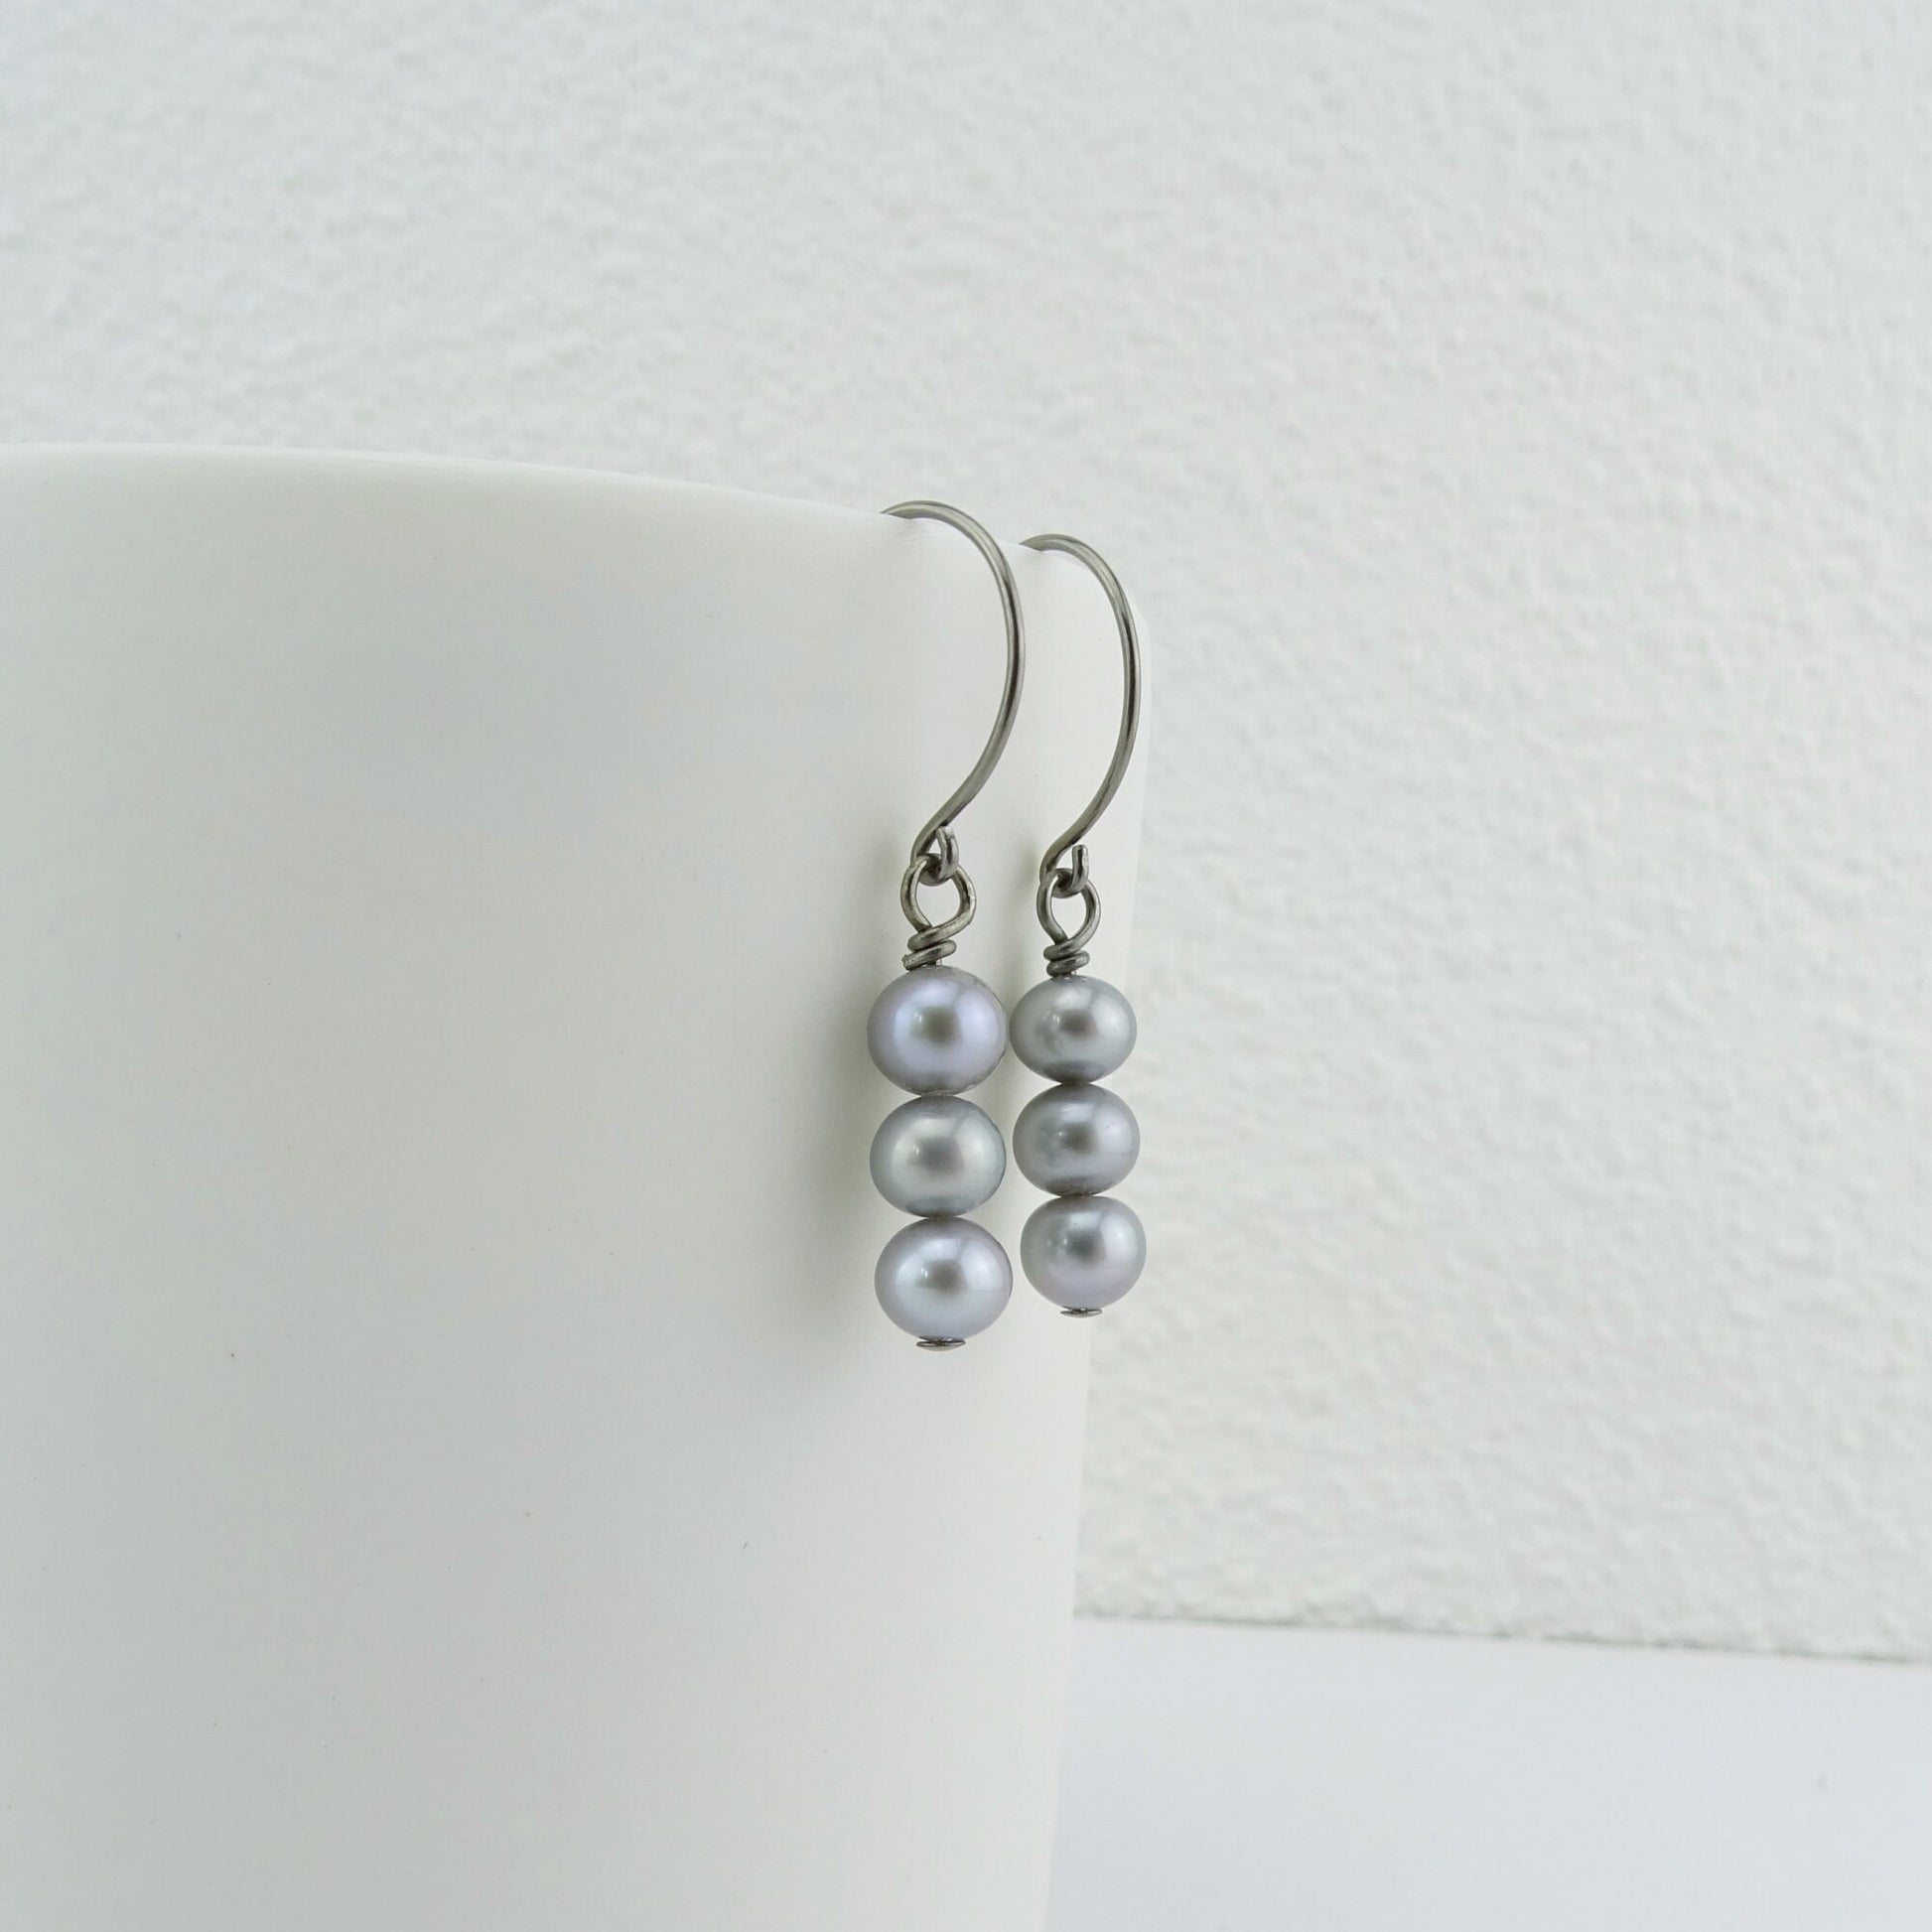 Triple Gray Pearl Niobium Earrings, Grey Freshwater Pearls Titanium Earrings, Hypoallergenic Hoop Nickel Free Earrings for Sensitive Ears